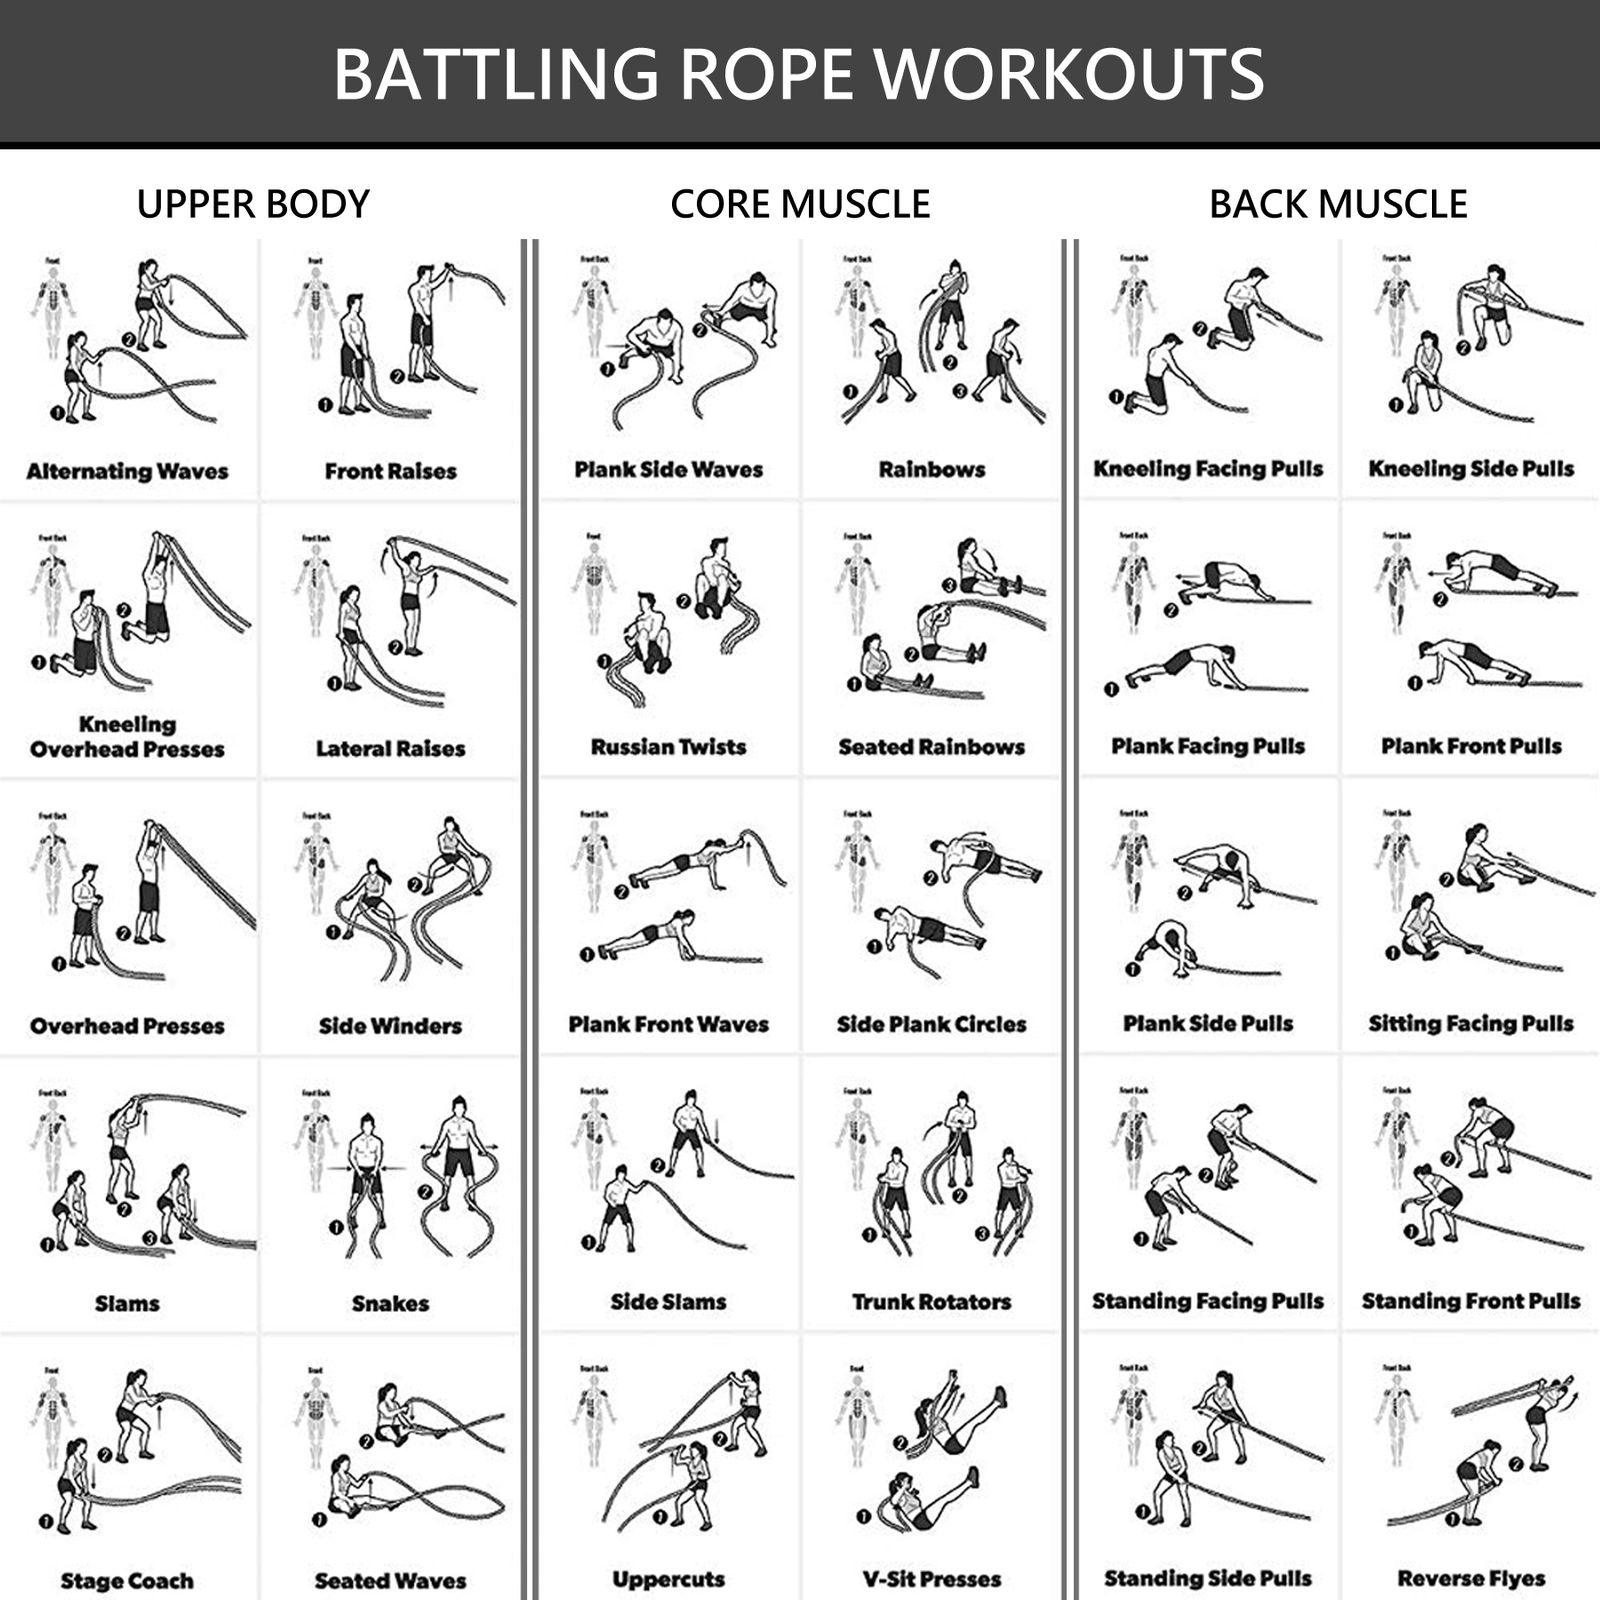 meteor-battling-ropes-battle-ropes-9m-12m-15m-for-strength-training